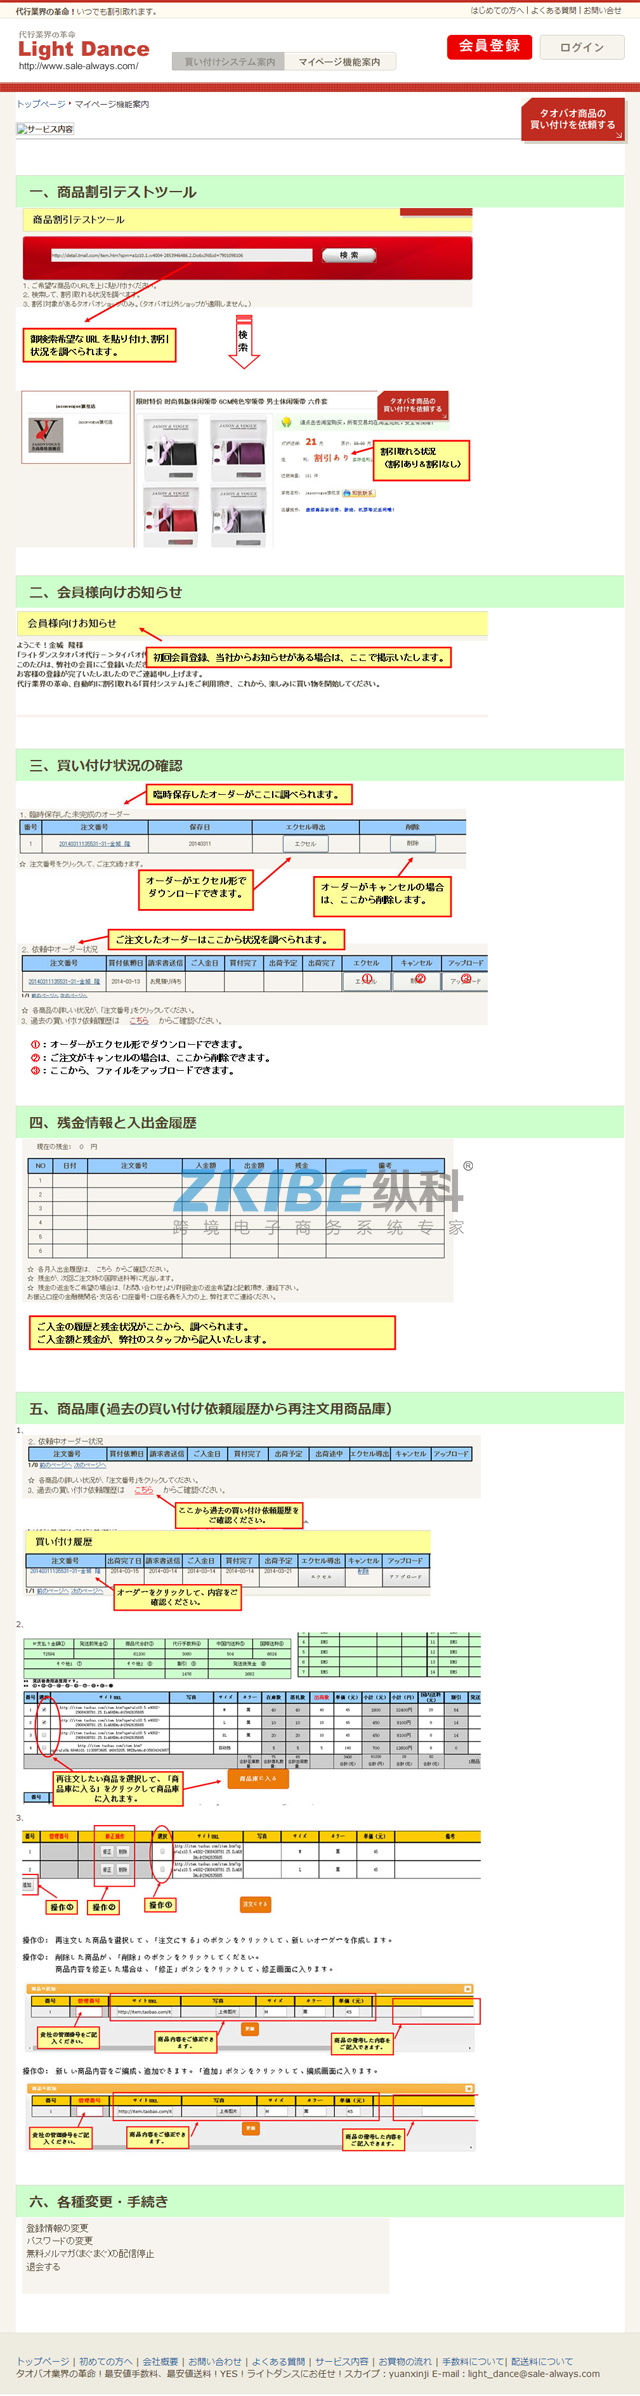 日文淘宝代购系统-首页 日文淘宝代购系统-购物指导页面